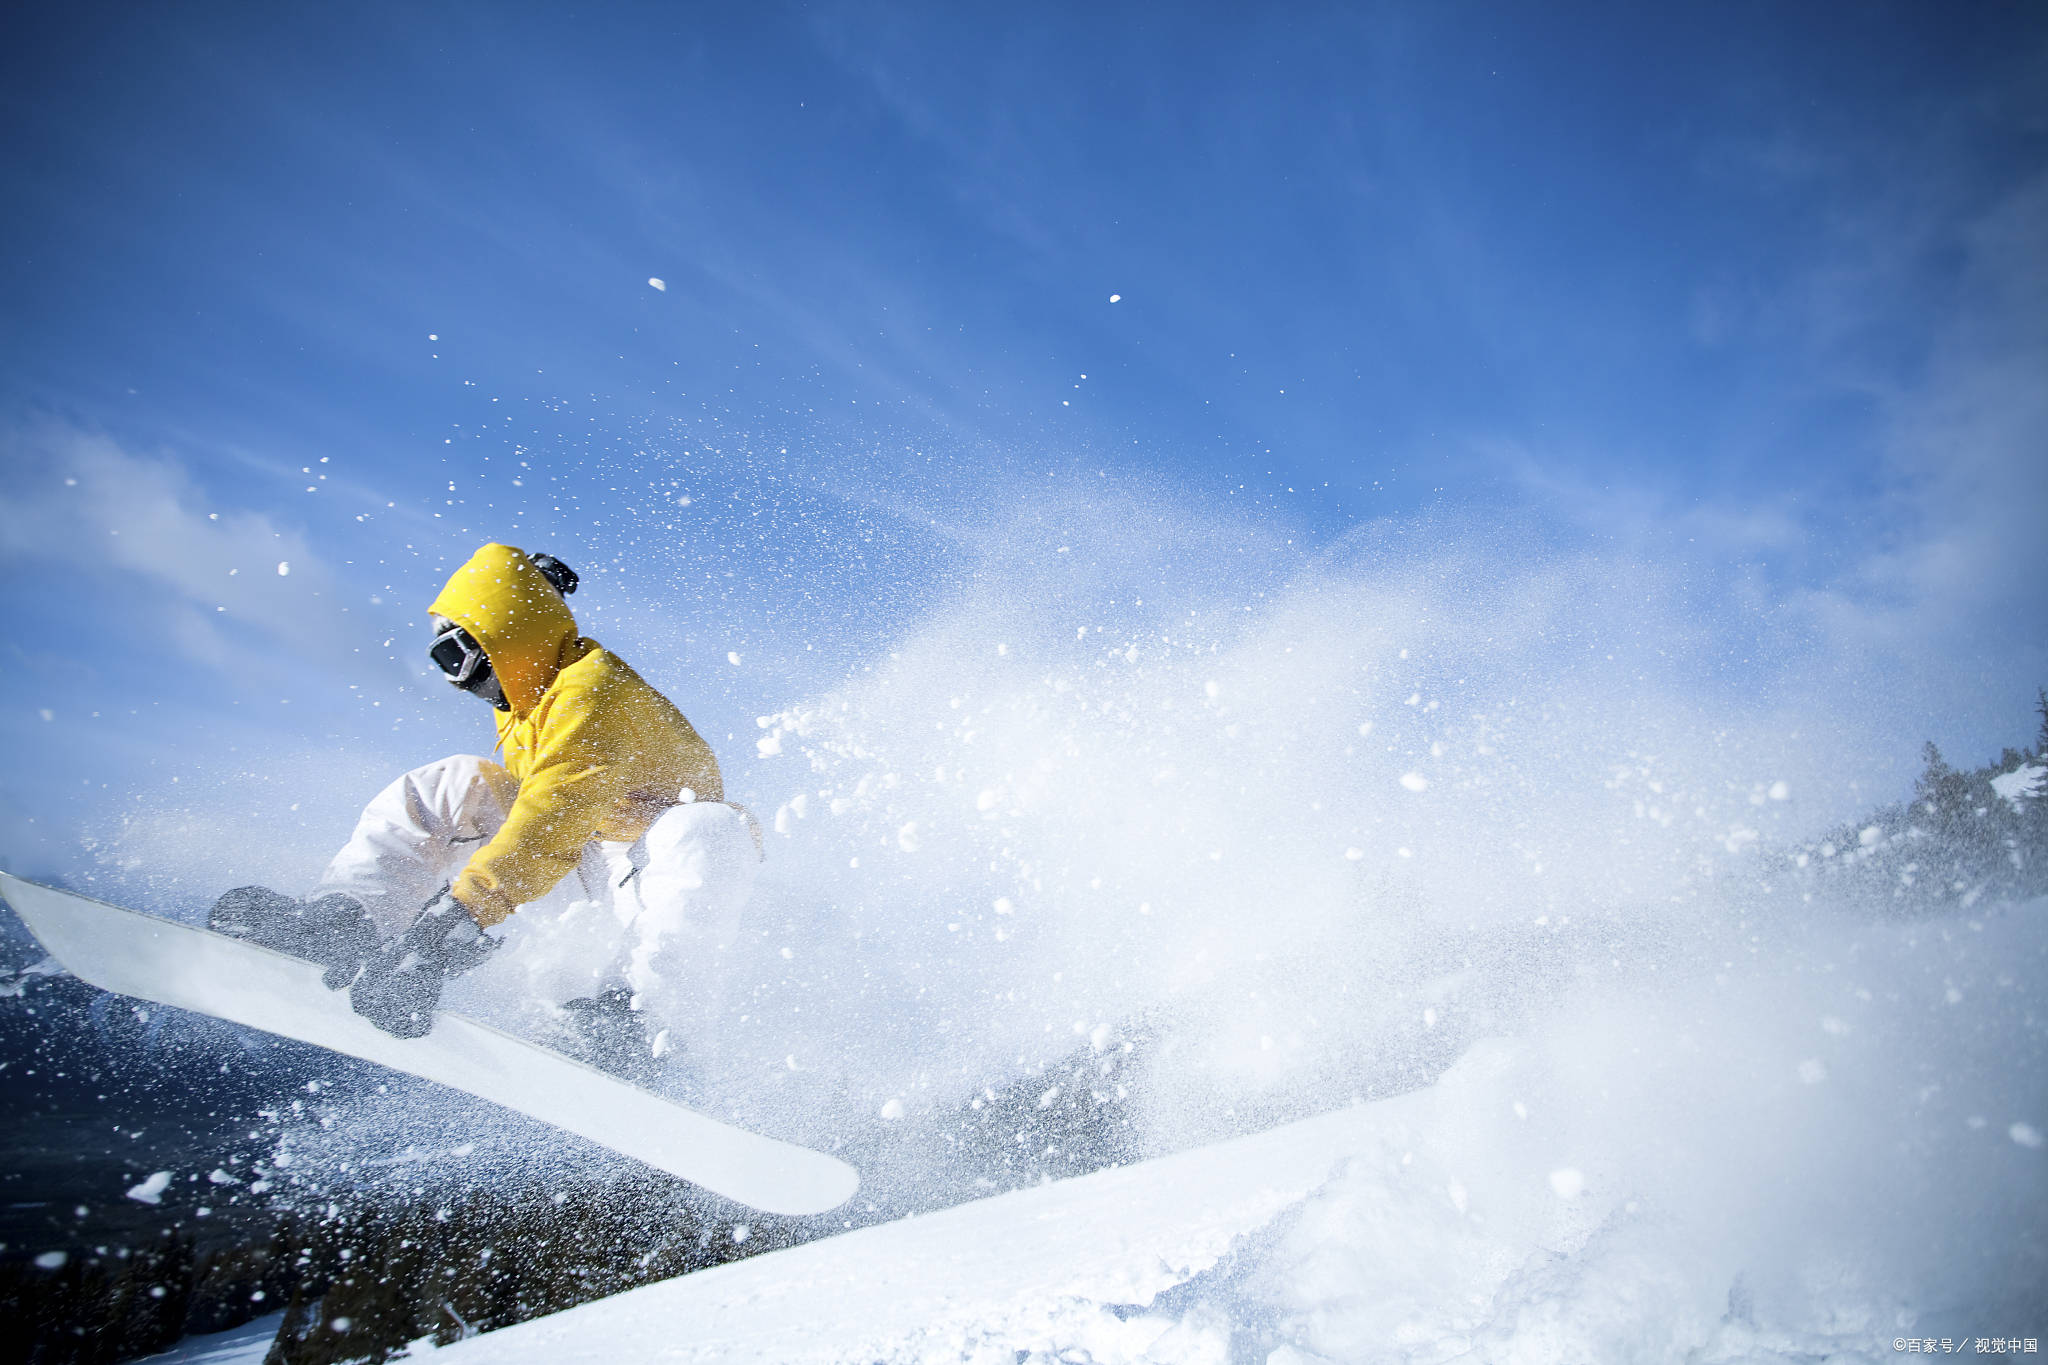 除了滑雪,亚布力滑雪场还举办了众多冰雪活动,如雪地摩托,雪地飞盘